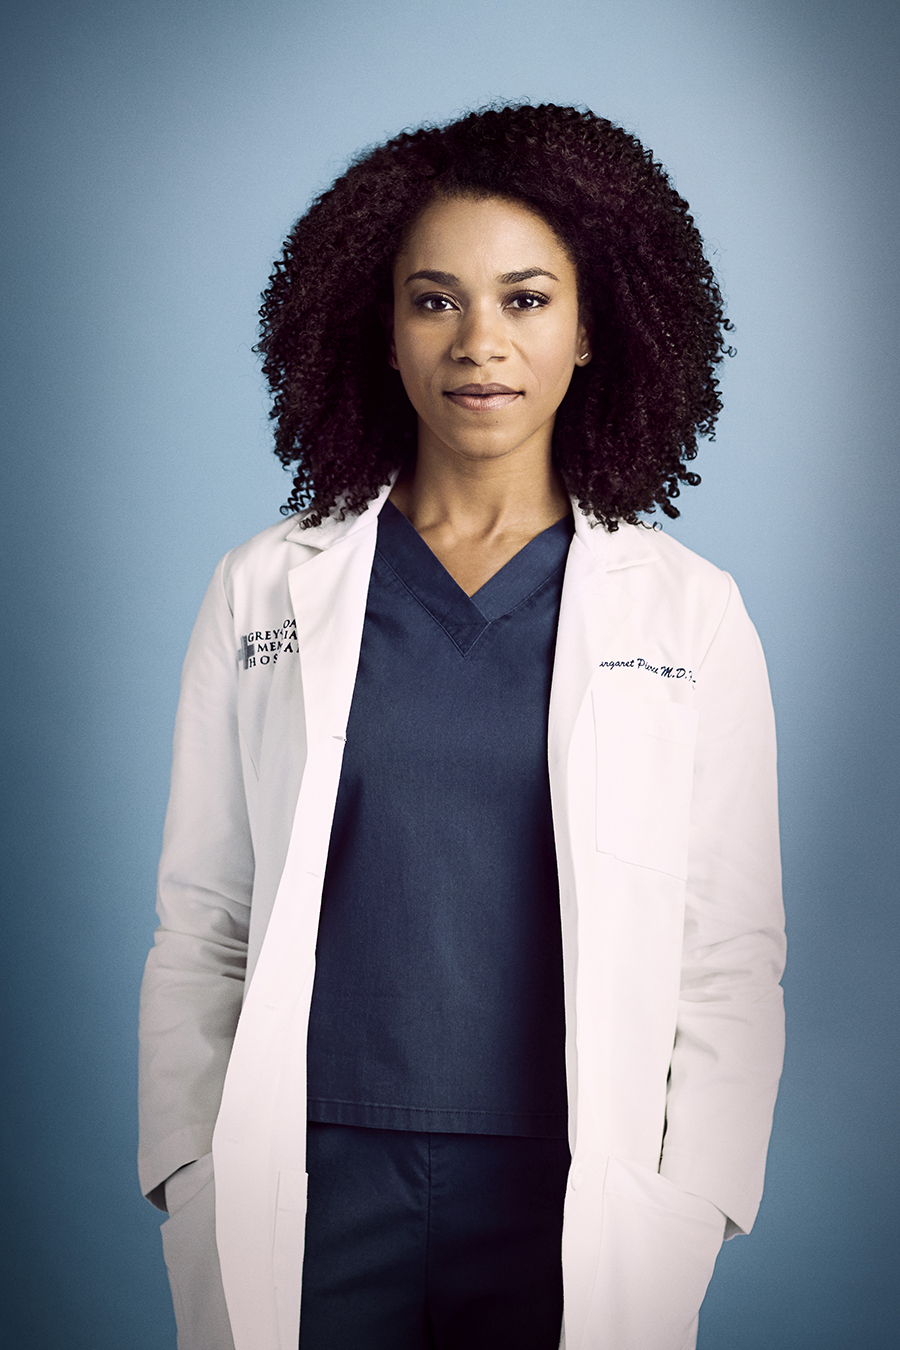 Kelly McCreary as Margaret Pierce in Grey's Anatomy